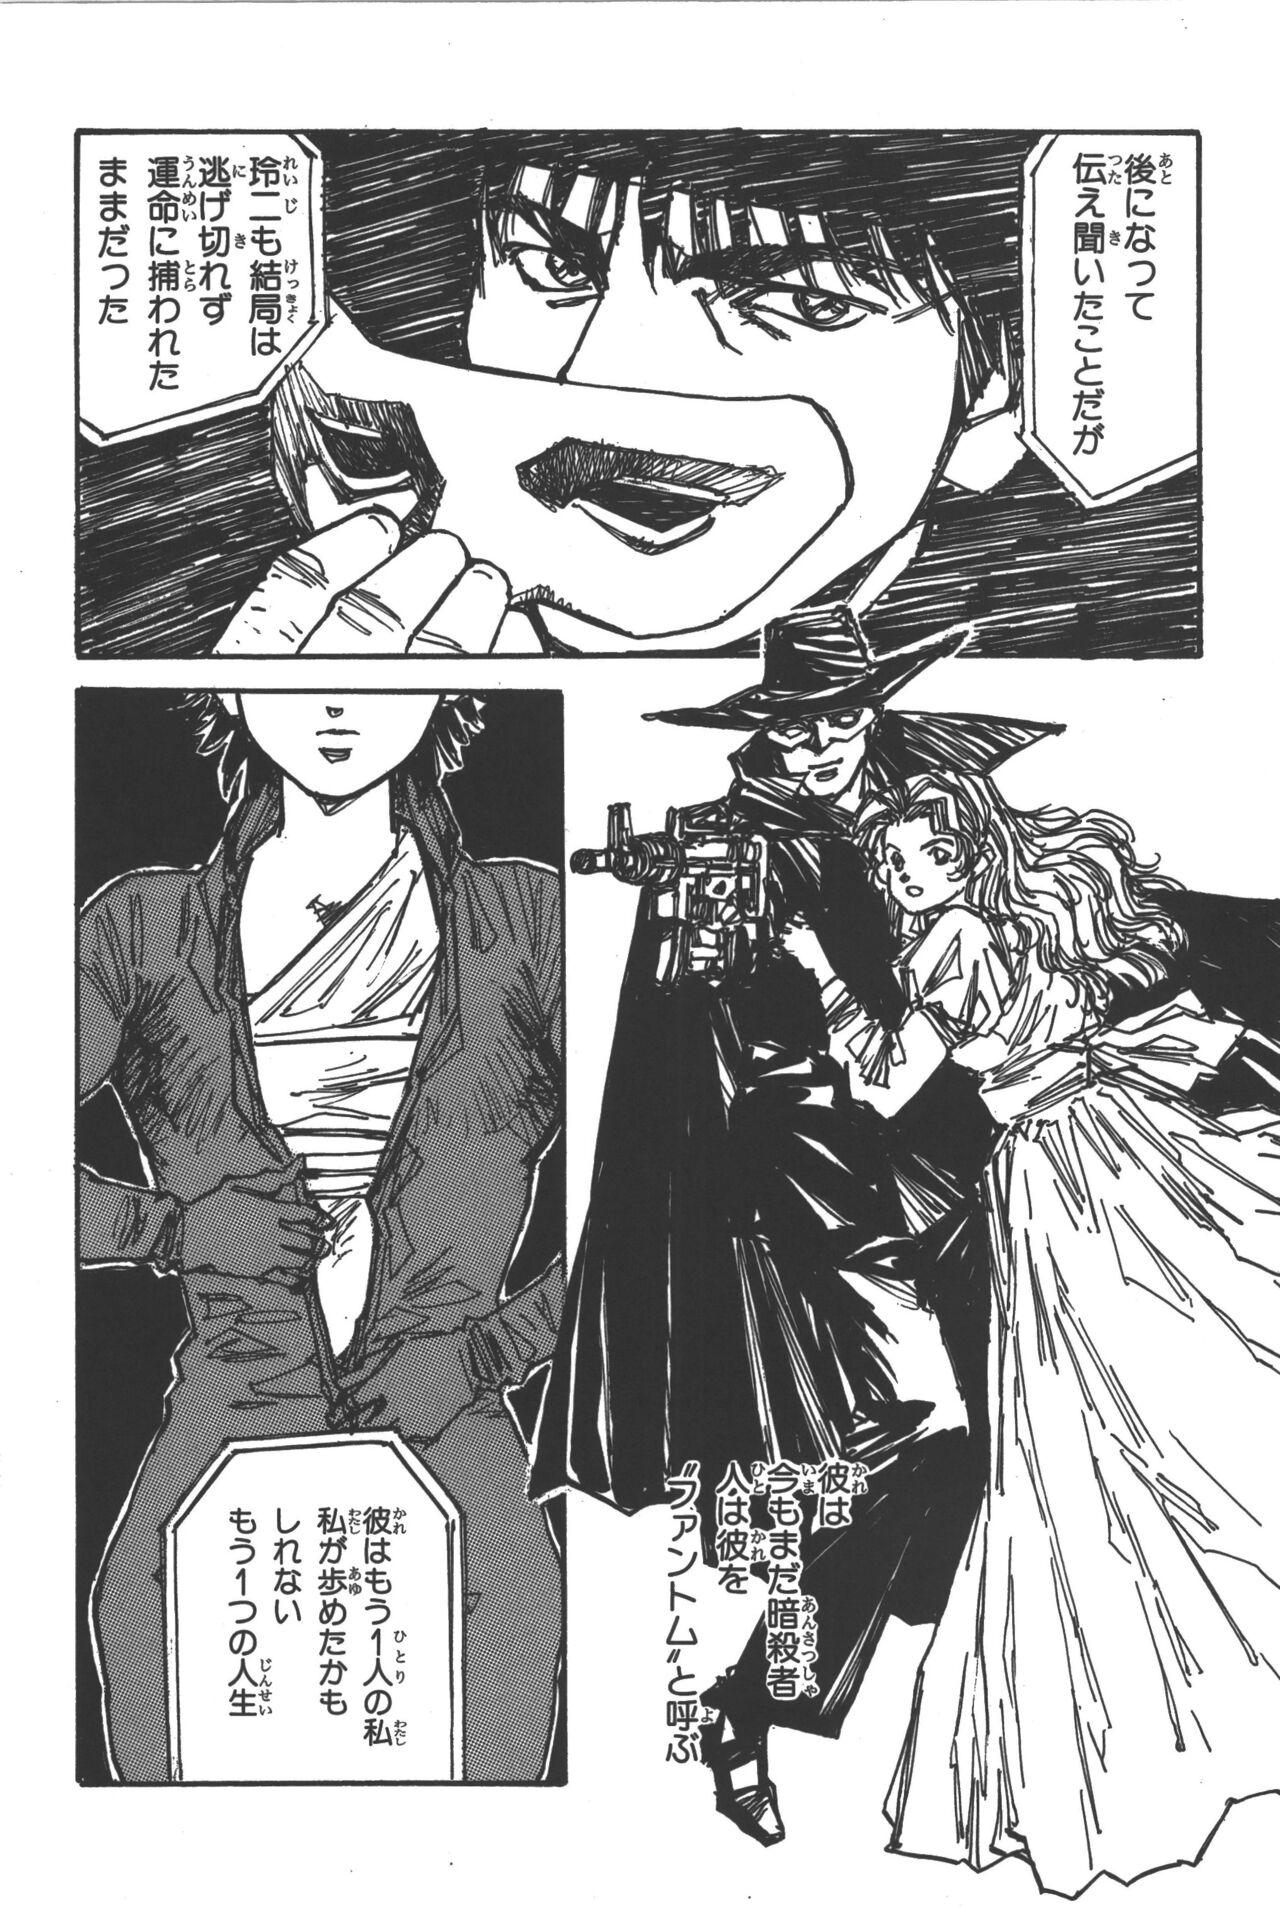 Phantom of Inferno Manga Anthology 48